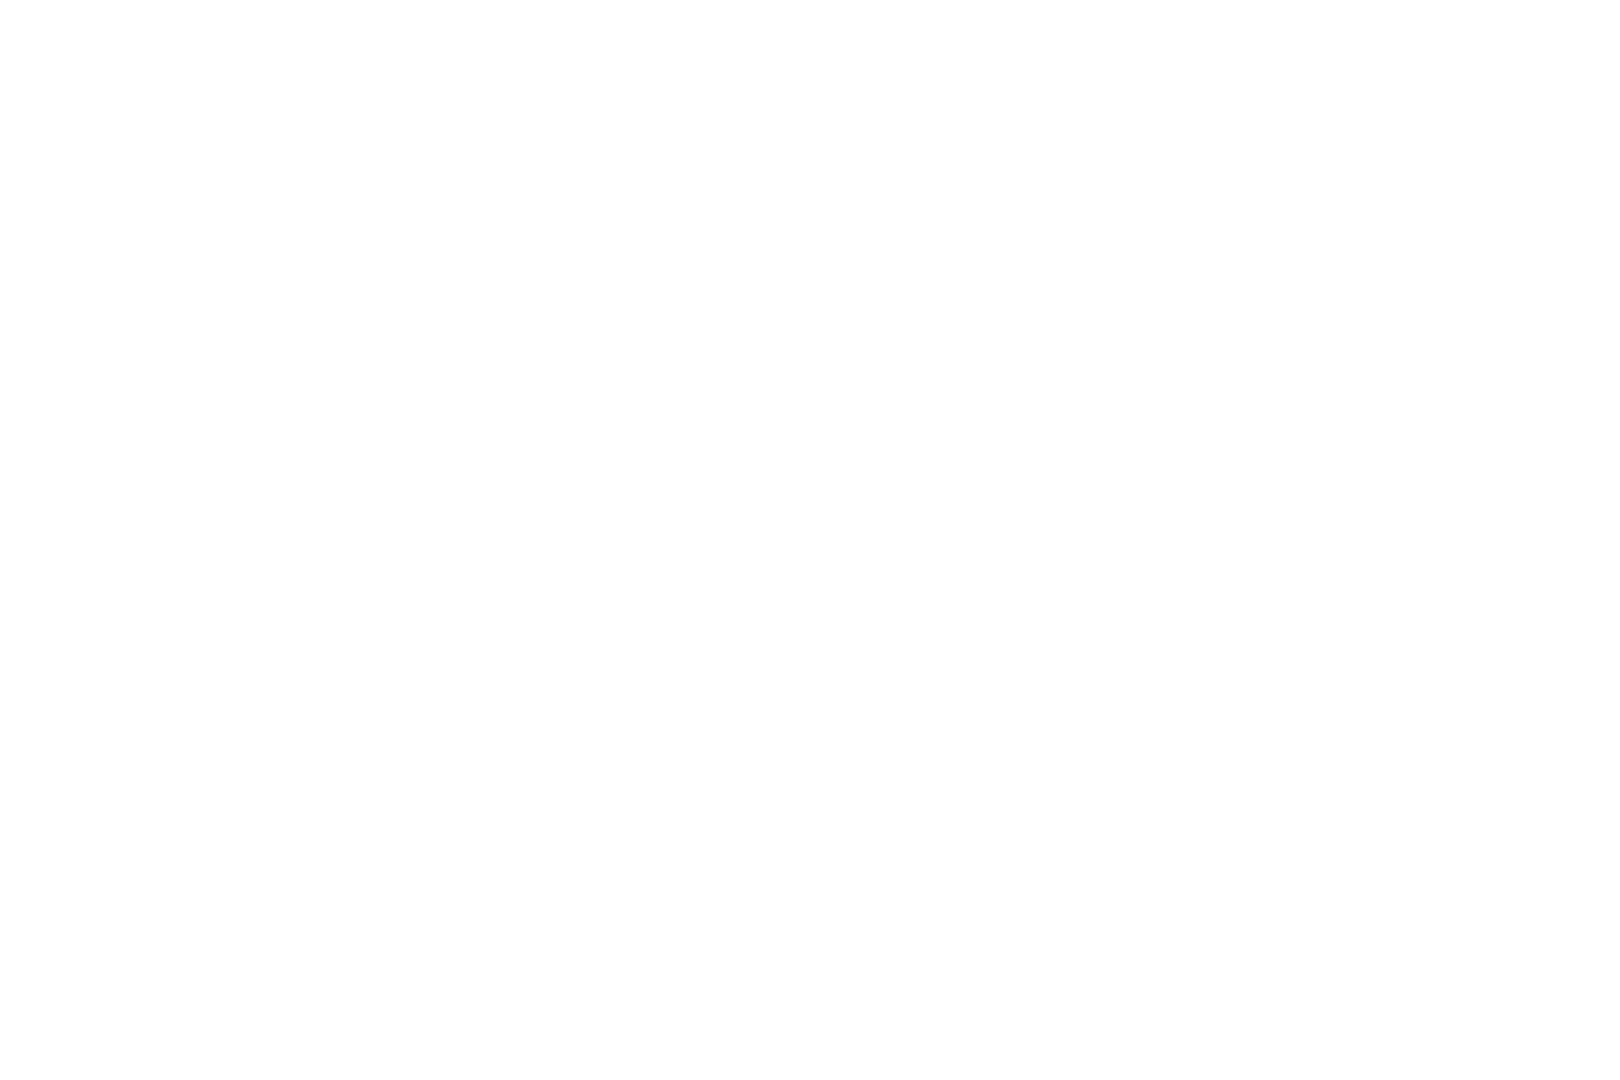 Beacon white.png